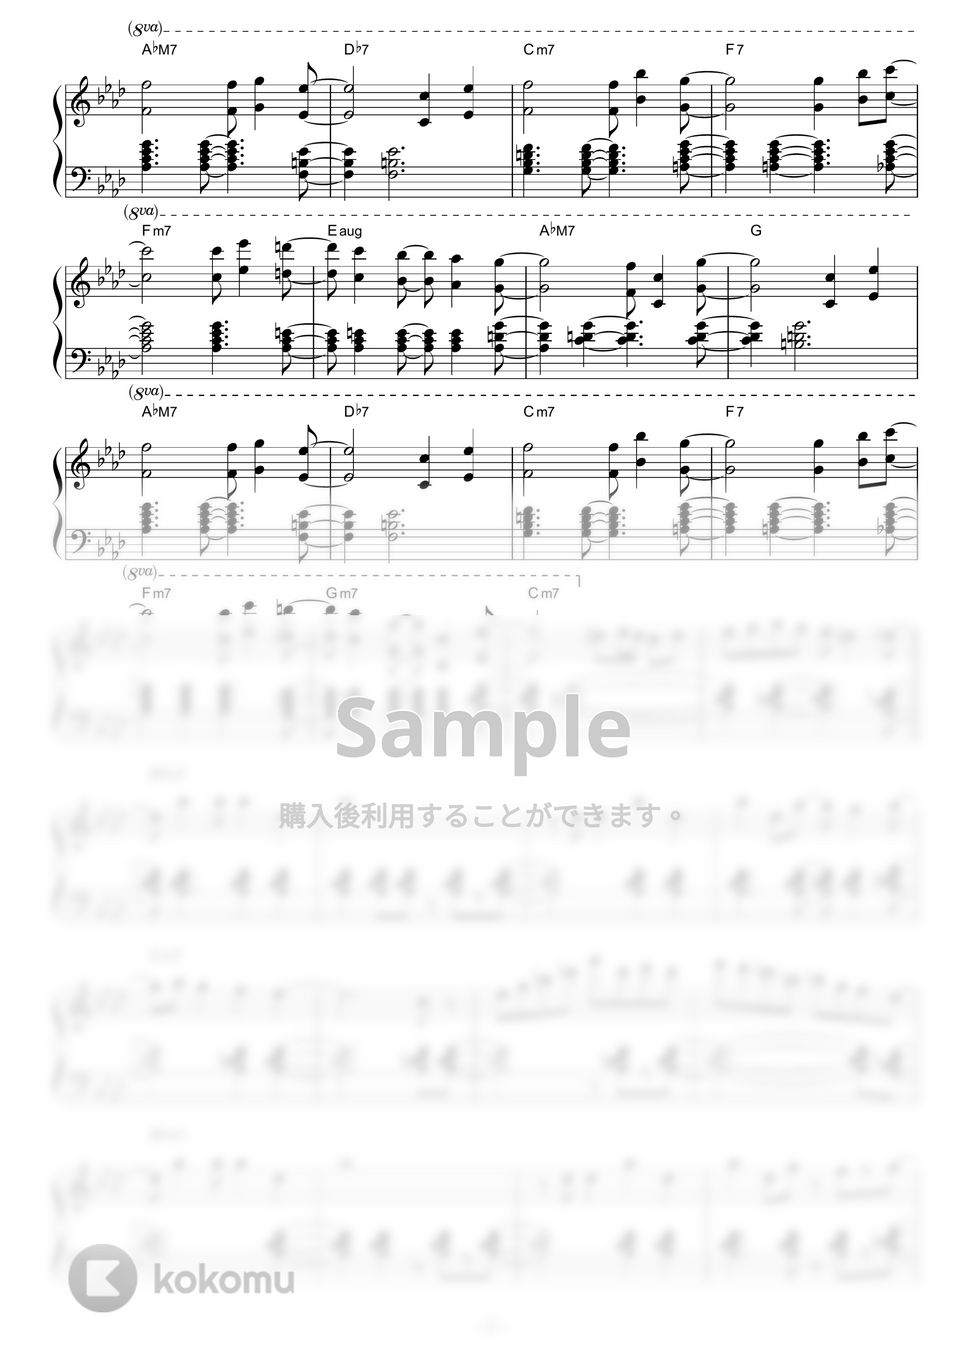 久石譲 - 風の通り道 (Jazz ver.) by piano*score